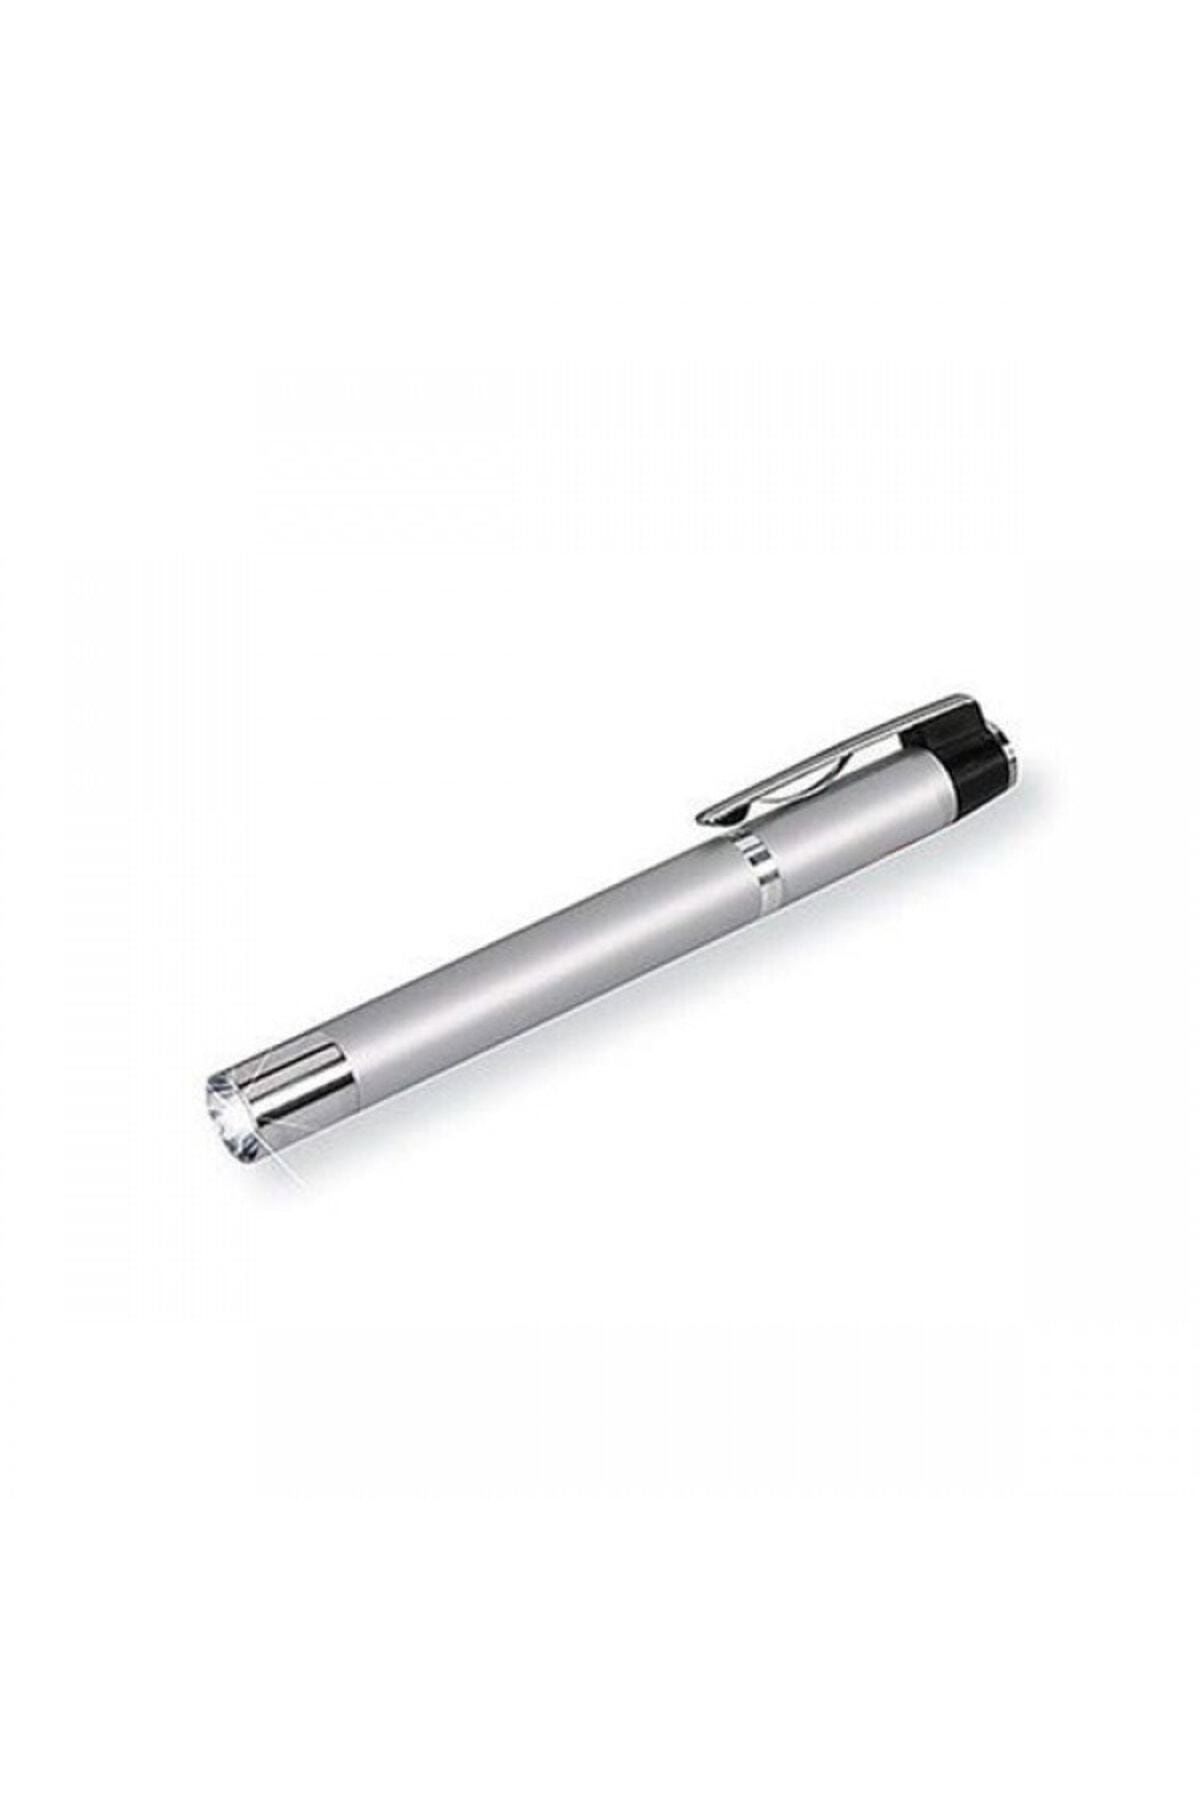 Genel Markalar Lofner Deluxe Alüminyum Göz Için Işık Kaynağı - Pen Light - Işık Kalemi